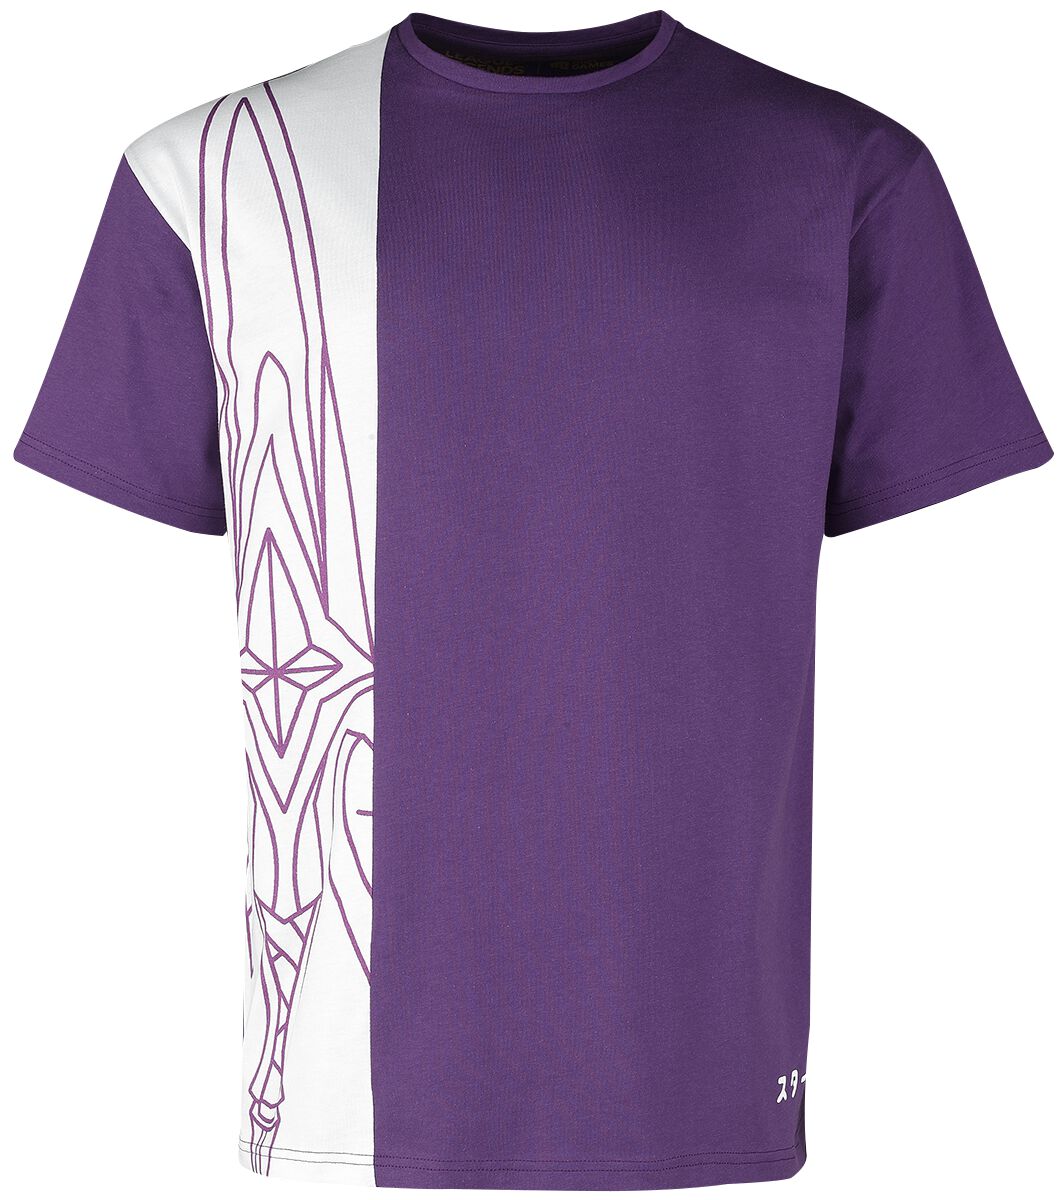 League Of Legends Star Guardian - Akali T-Shirt weiß lila